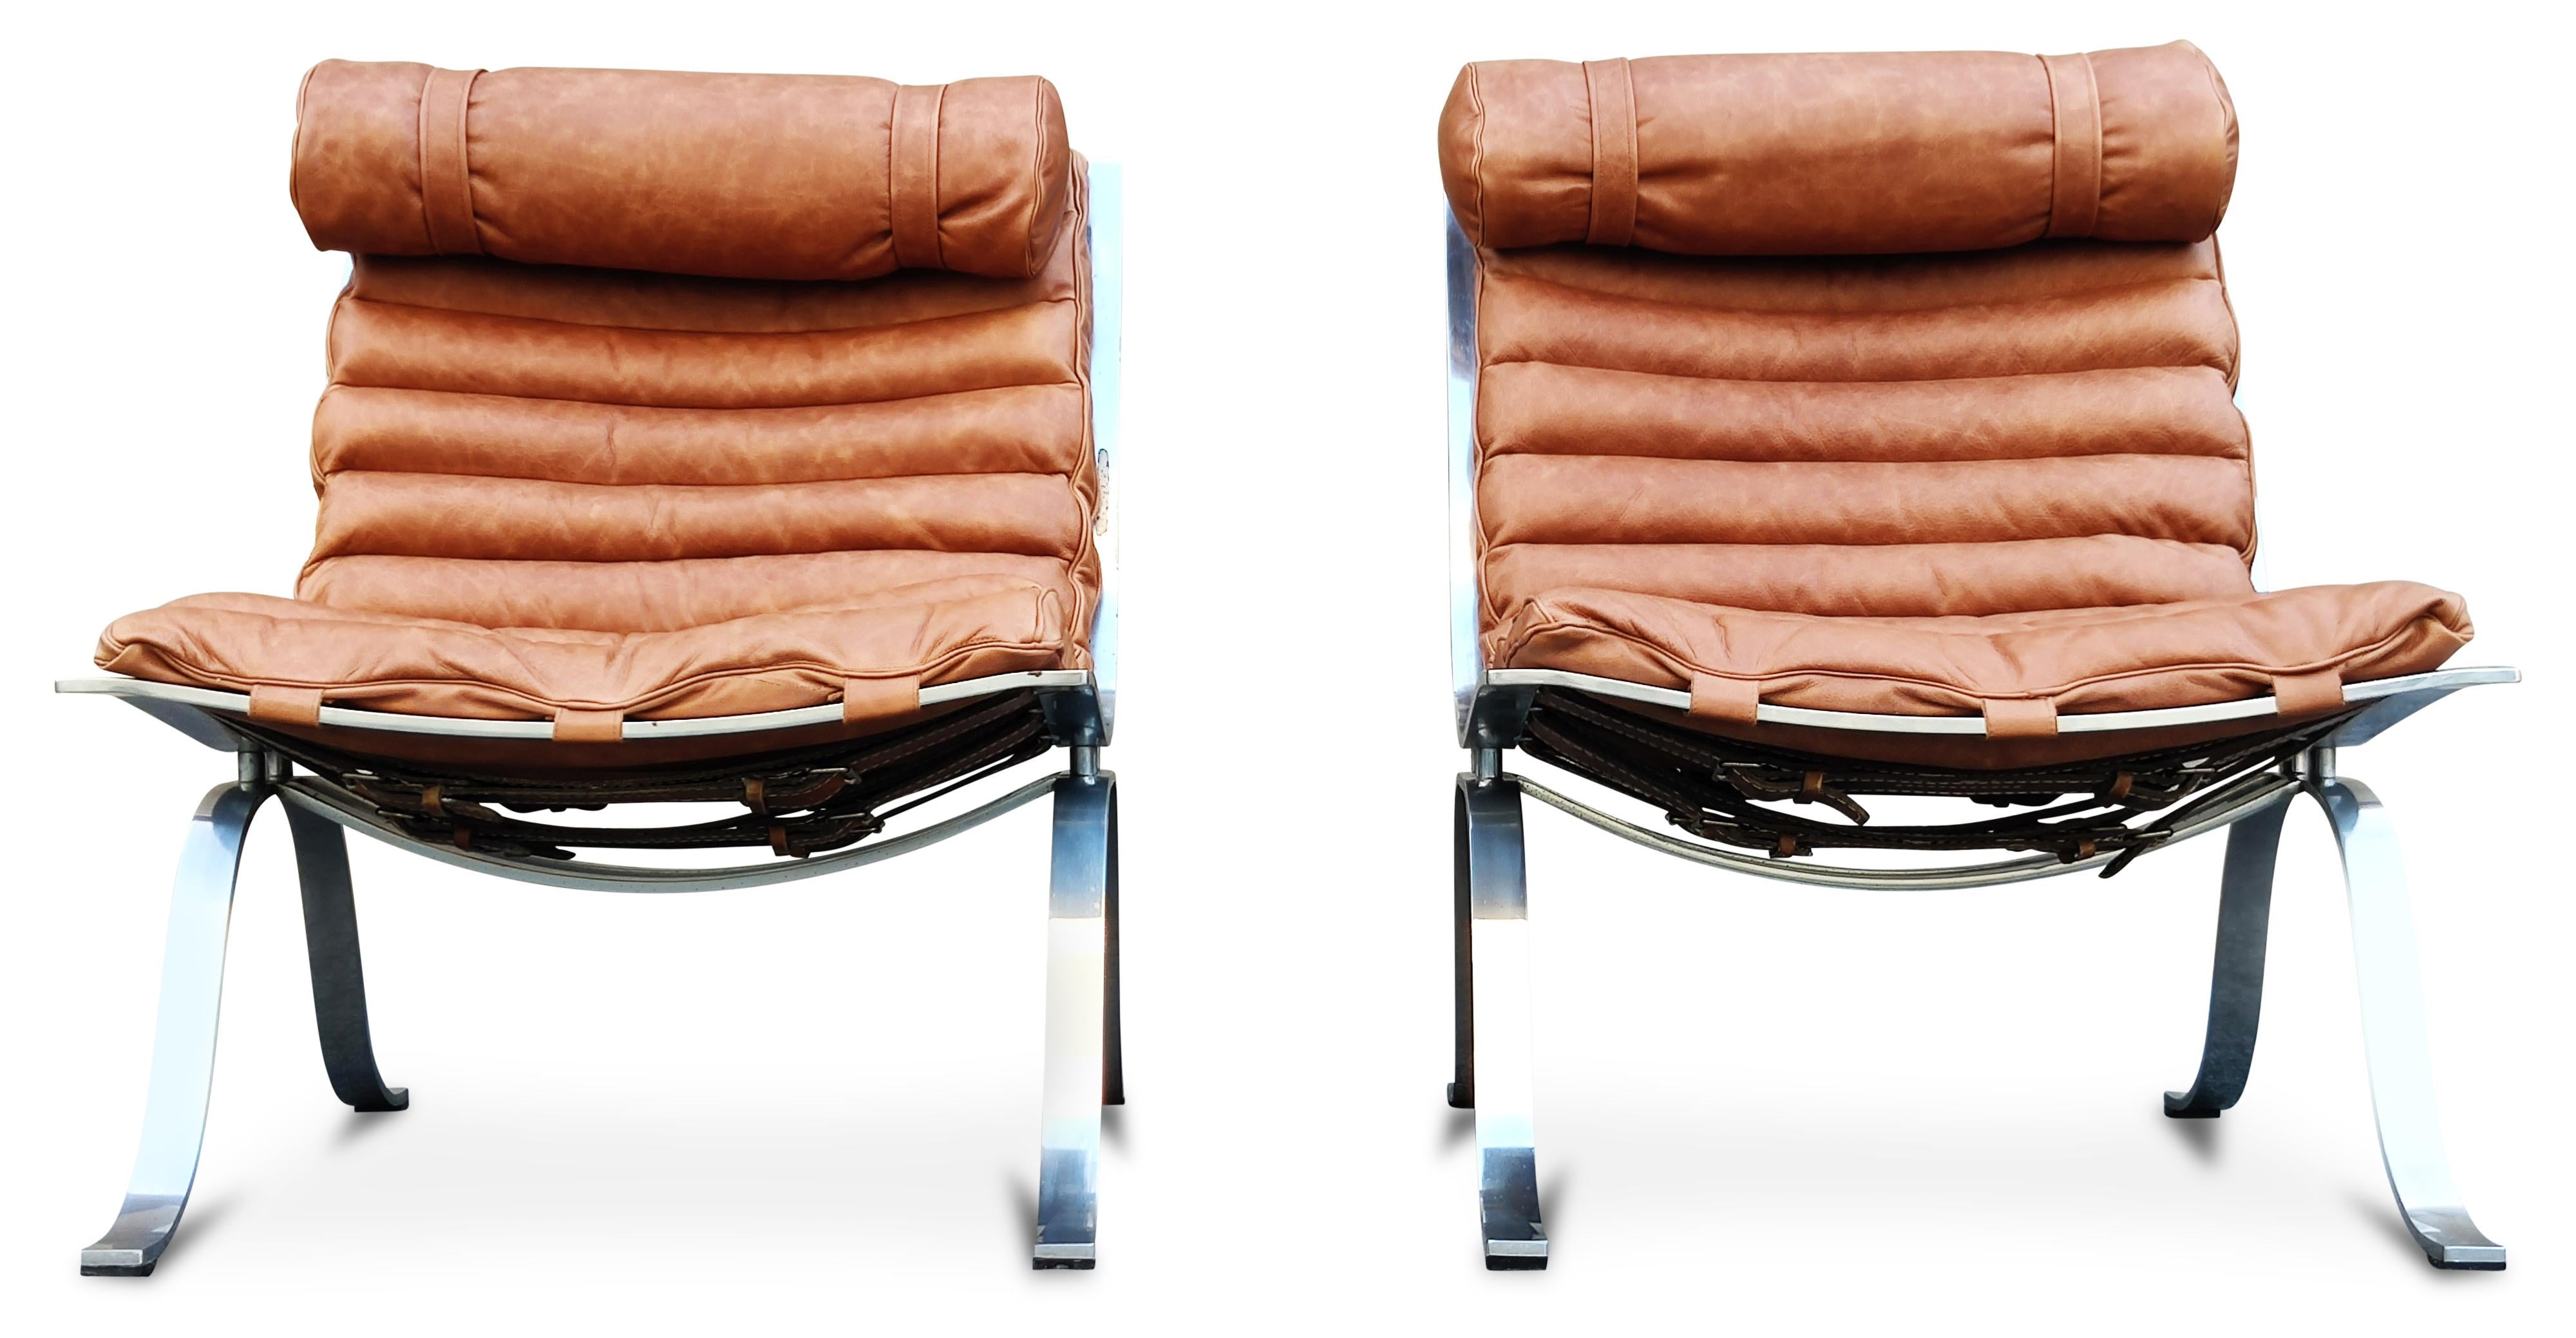 Cette magnifique paire de chaises longues a été conçue dans les années 1960 par Arne Norell pour Norell Moebel. Les cadres sont constitués de deux courbes d'acier chromé, et les coussins simples ont été récemment retapissés en cuir couleur cognac à